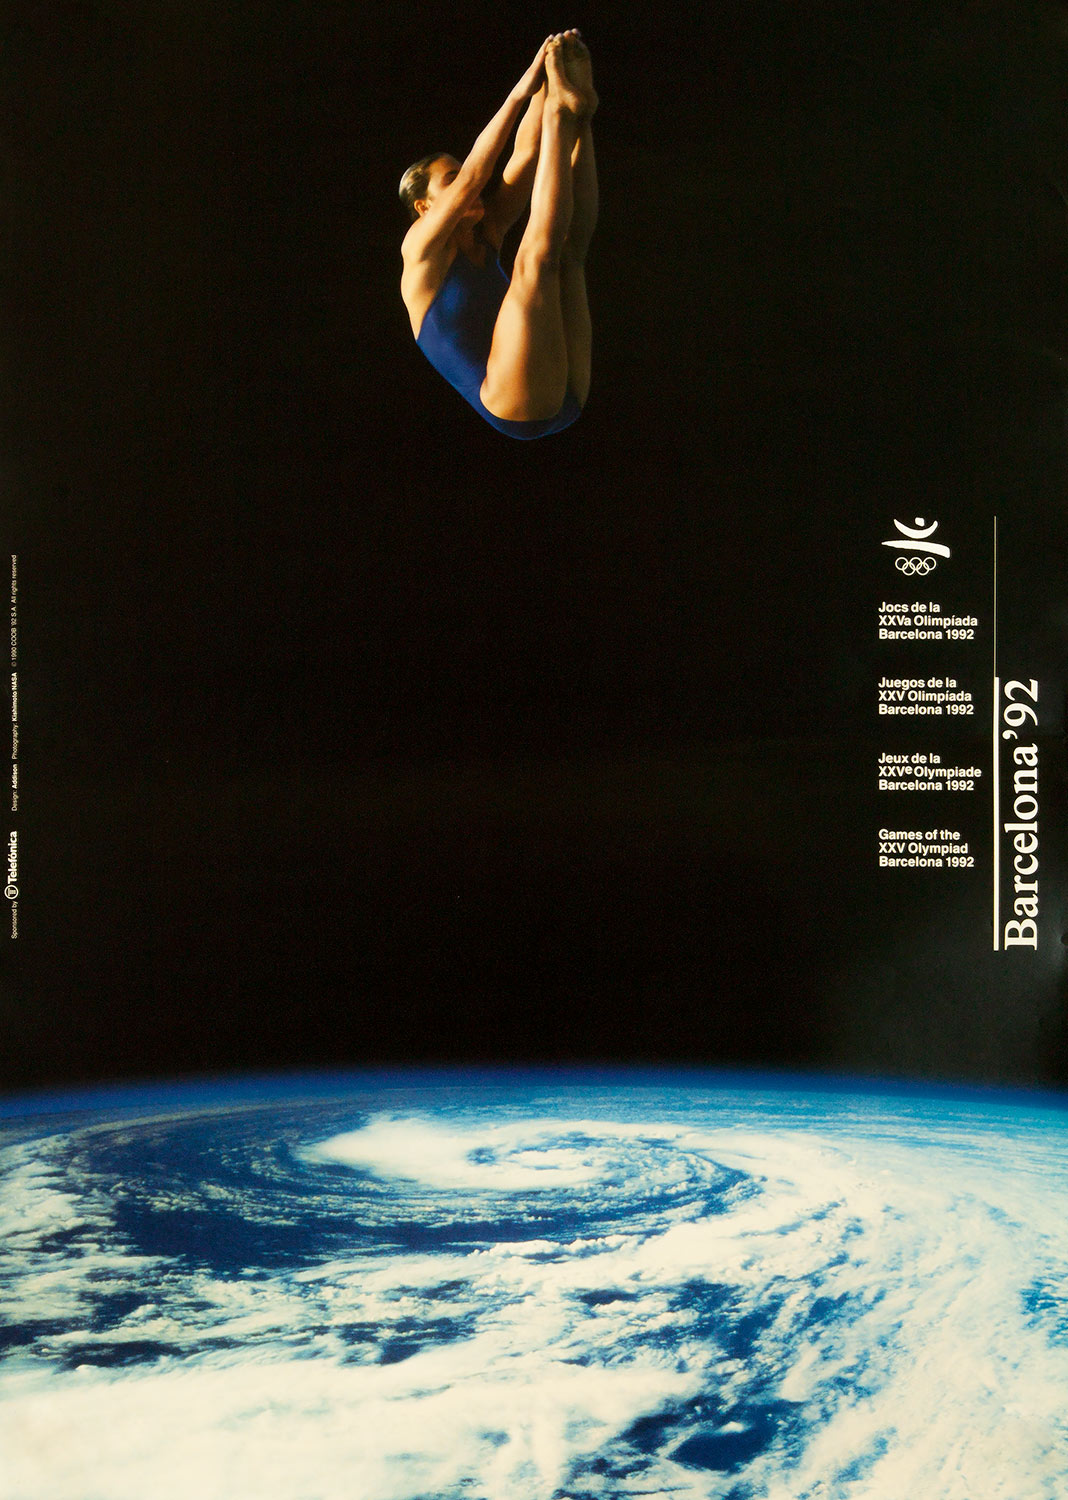 Plakat mit Abbildung einer Wasserspringerin. Im Hintergrund der Planet Erde